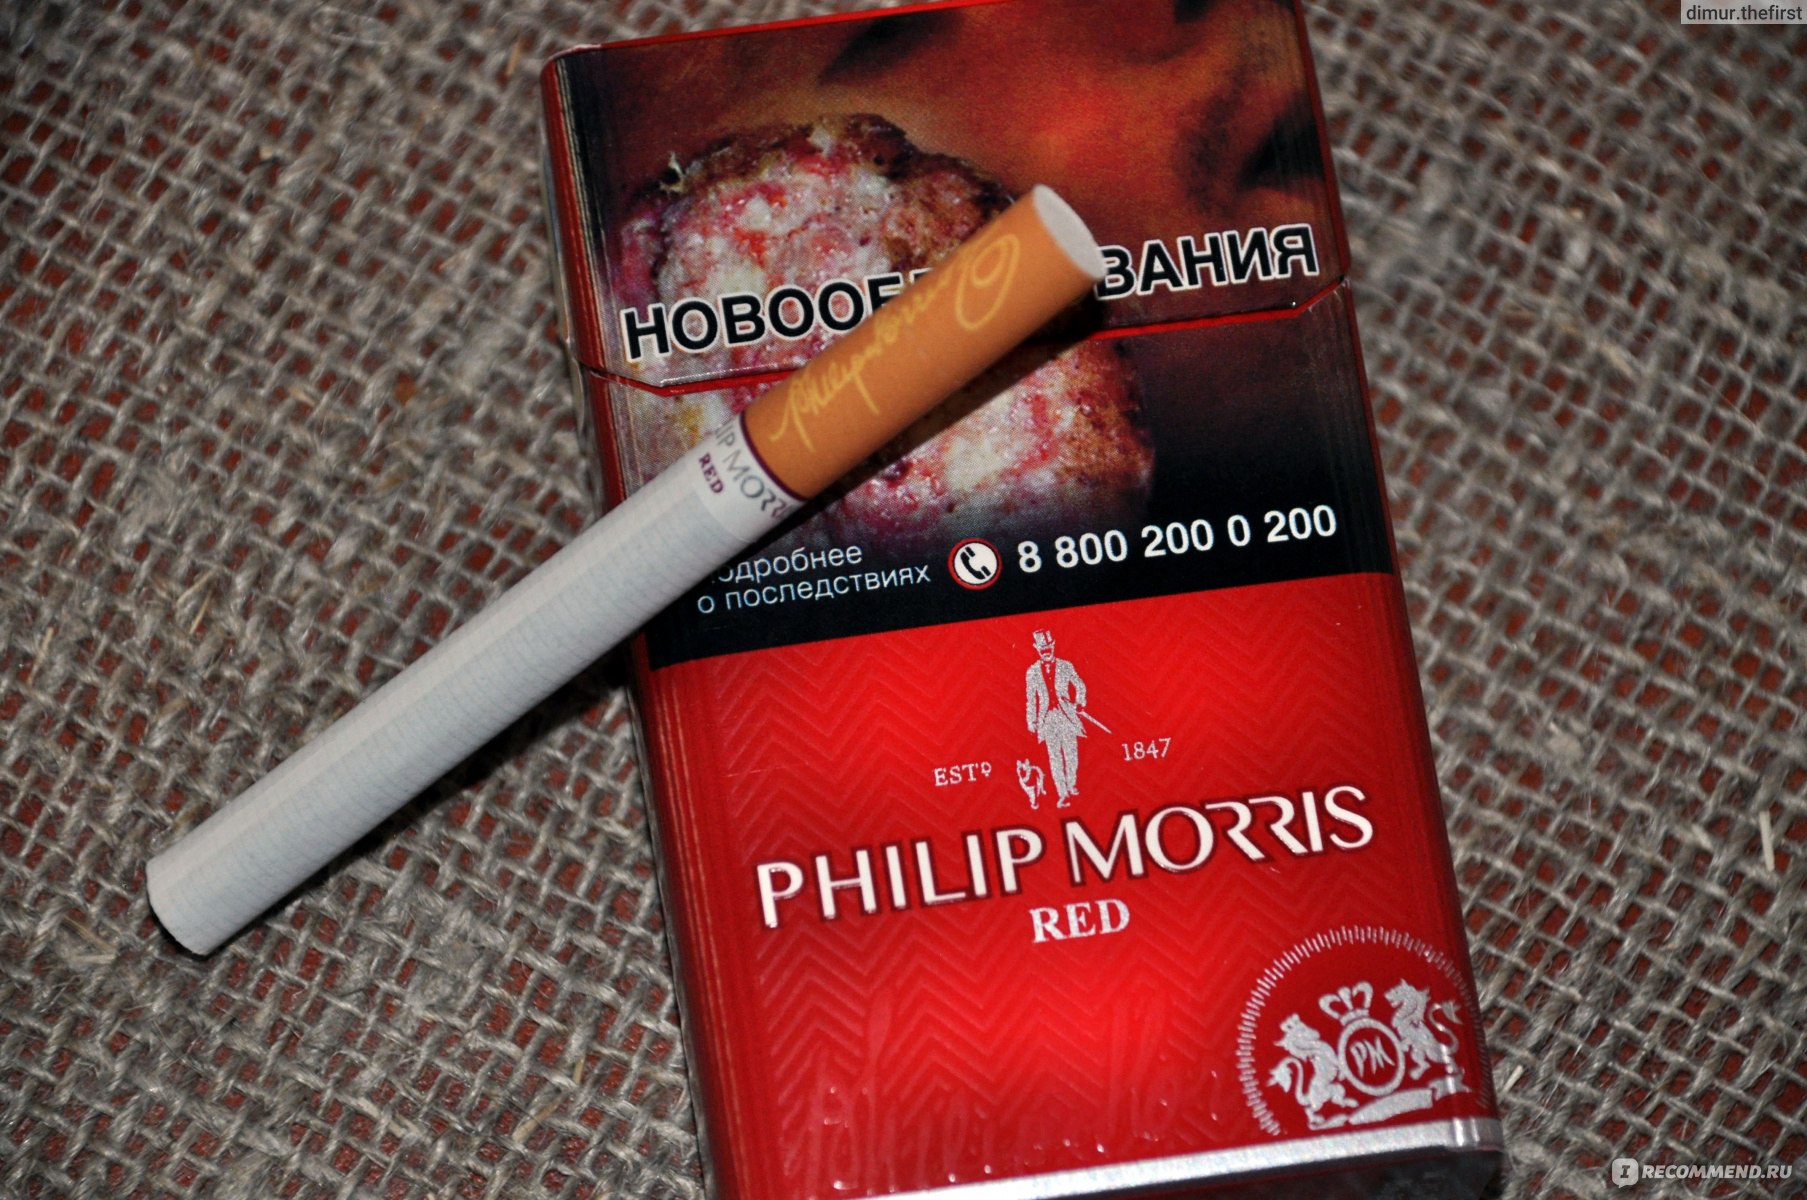 Филип моррис цена с кнопкой. Сигареты Филип Моррис красный. Сигареты красни флип Морес. Сигареты Филип Морис с красной кнопкой. Сигареты пилпморс красный.